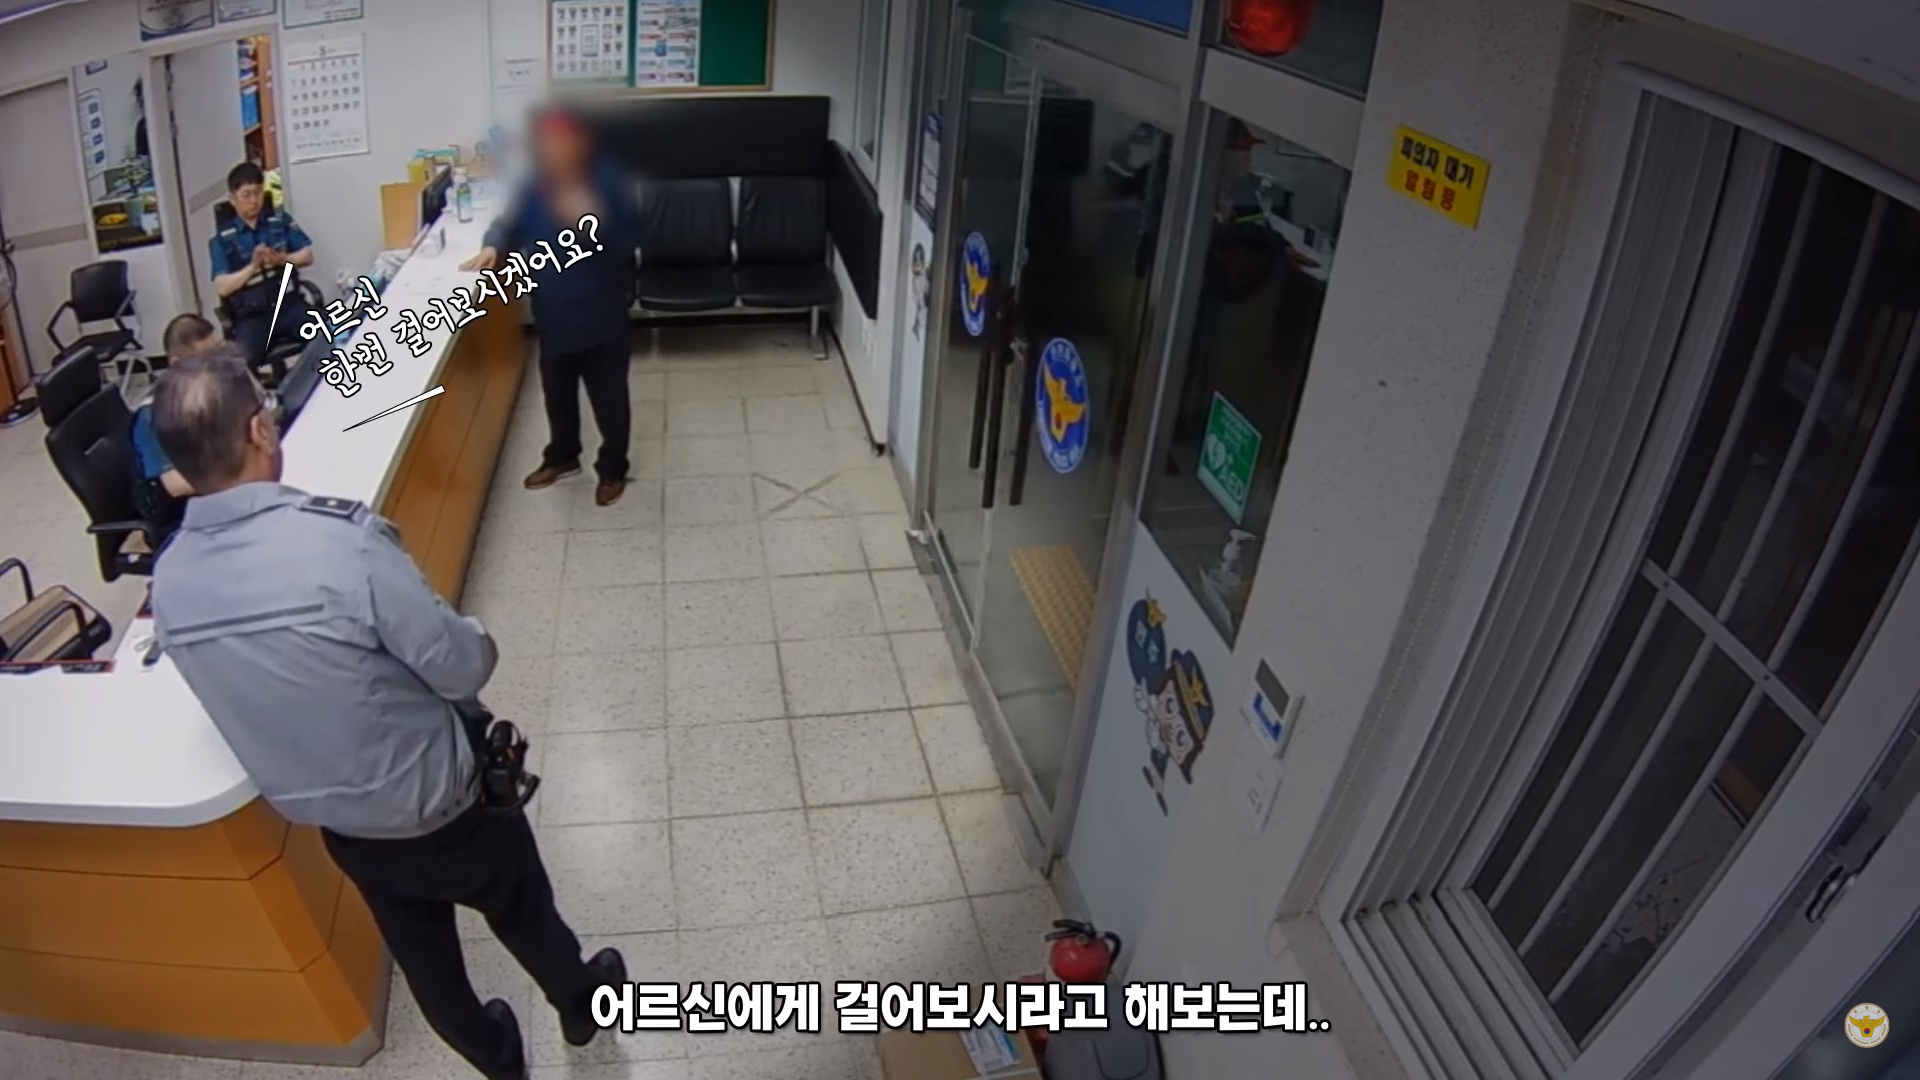 이봉준 경위가 경찰서에 온 60대 남성에게 “똑바로 걸어보시라”고 하는 모습. 경찰청 유튜브